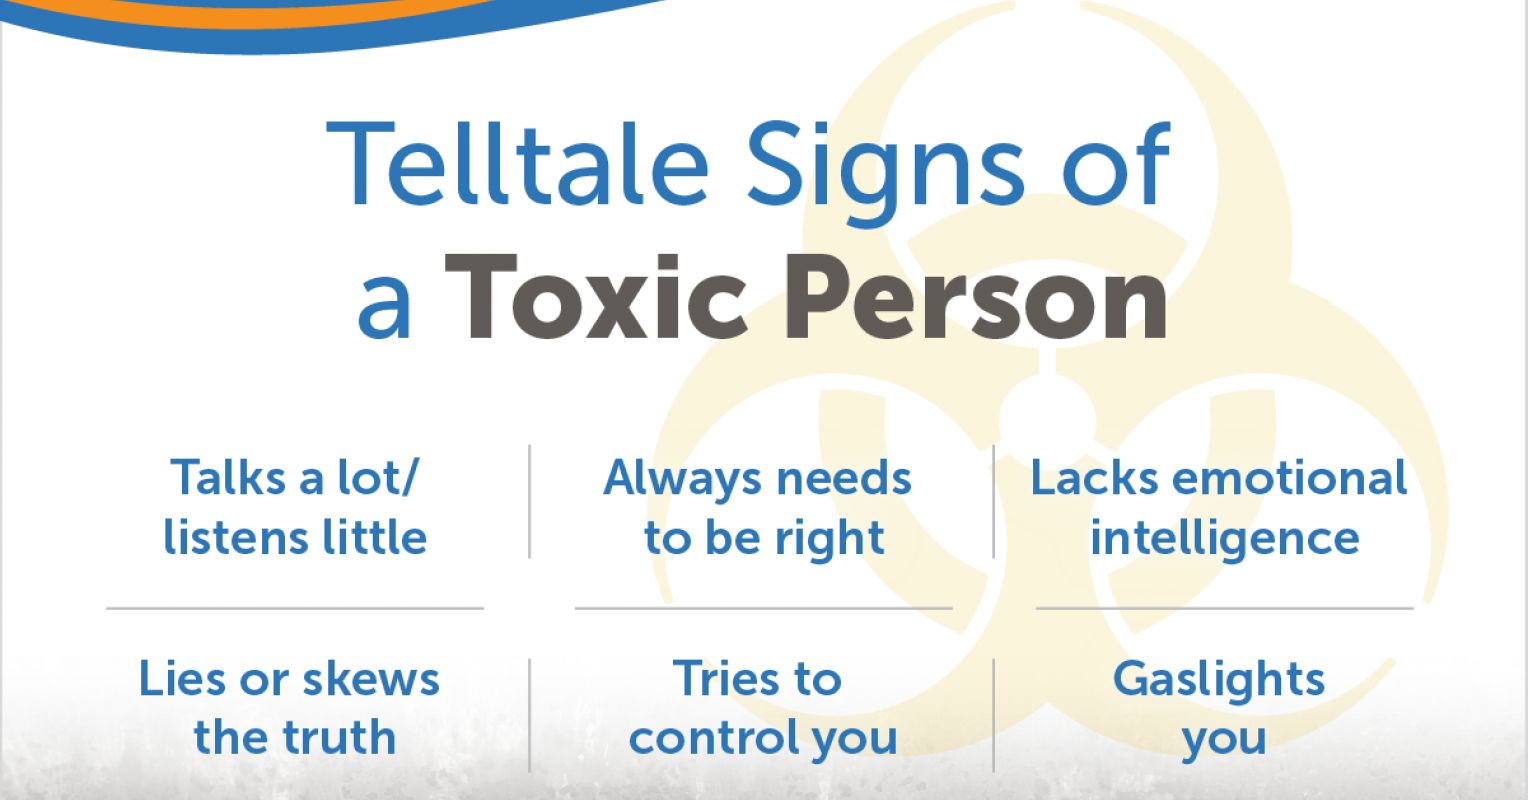 Отрицателни личностни характеристики: Ето 11 общи признака на токсичен човек